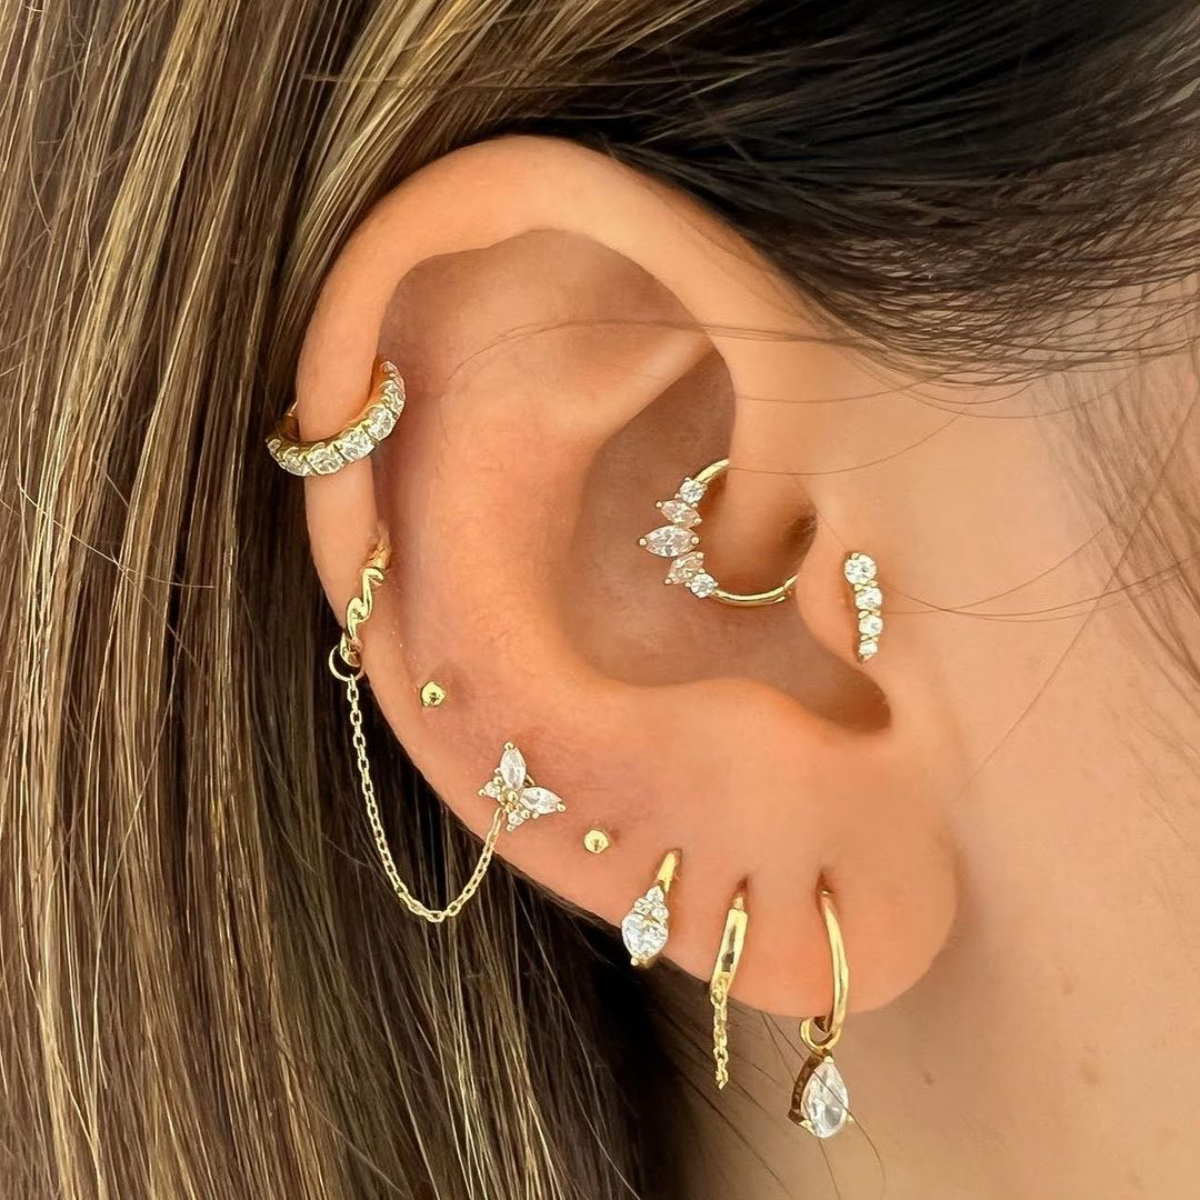 ear piercing designs in gold